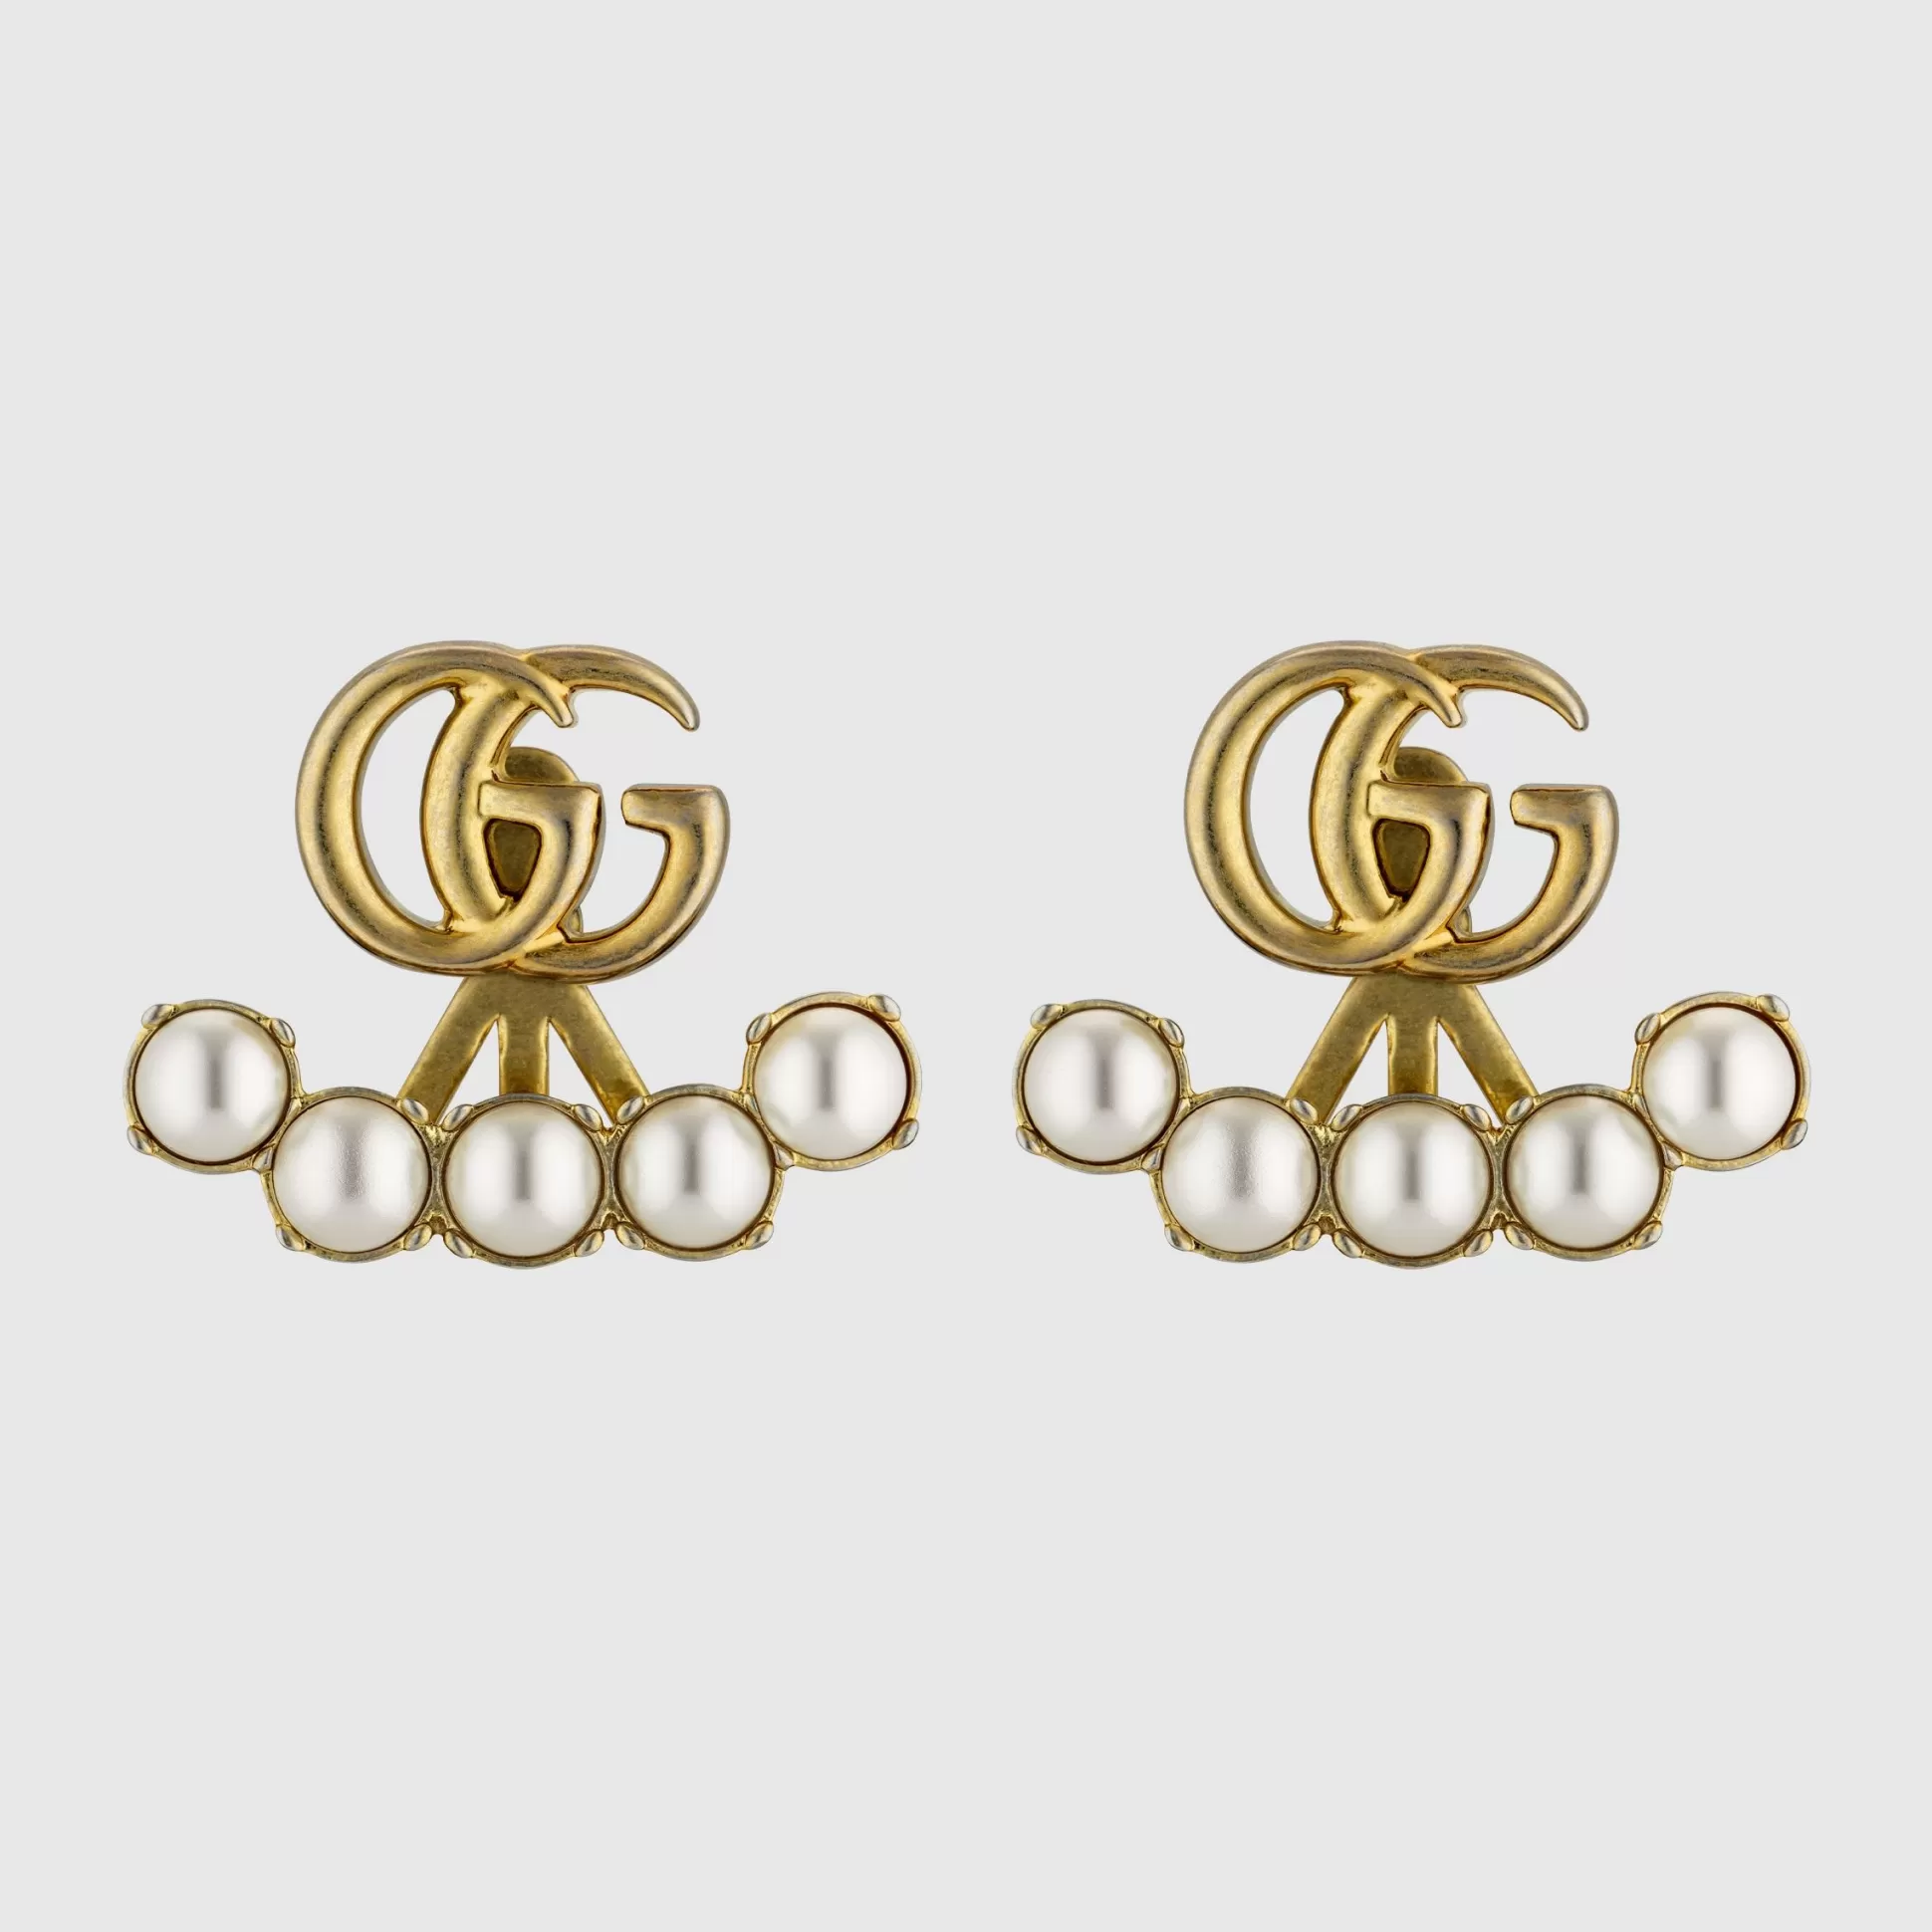 GUCCI Pearl Double G Earrings- Earrings